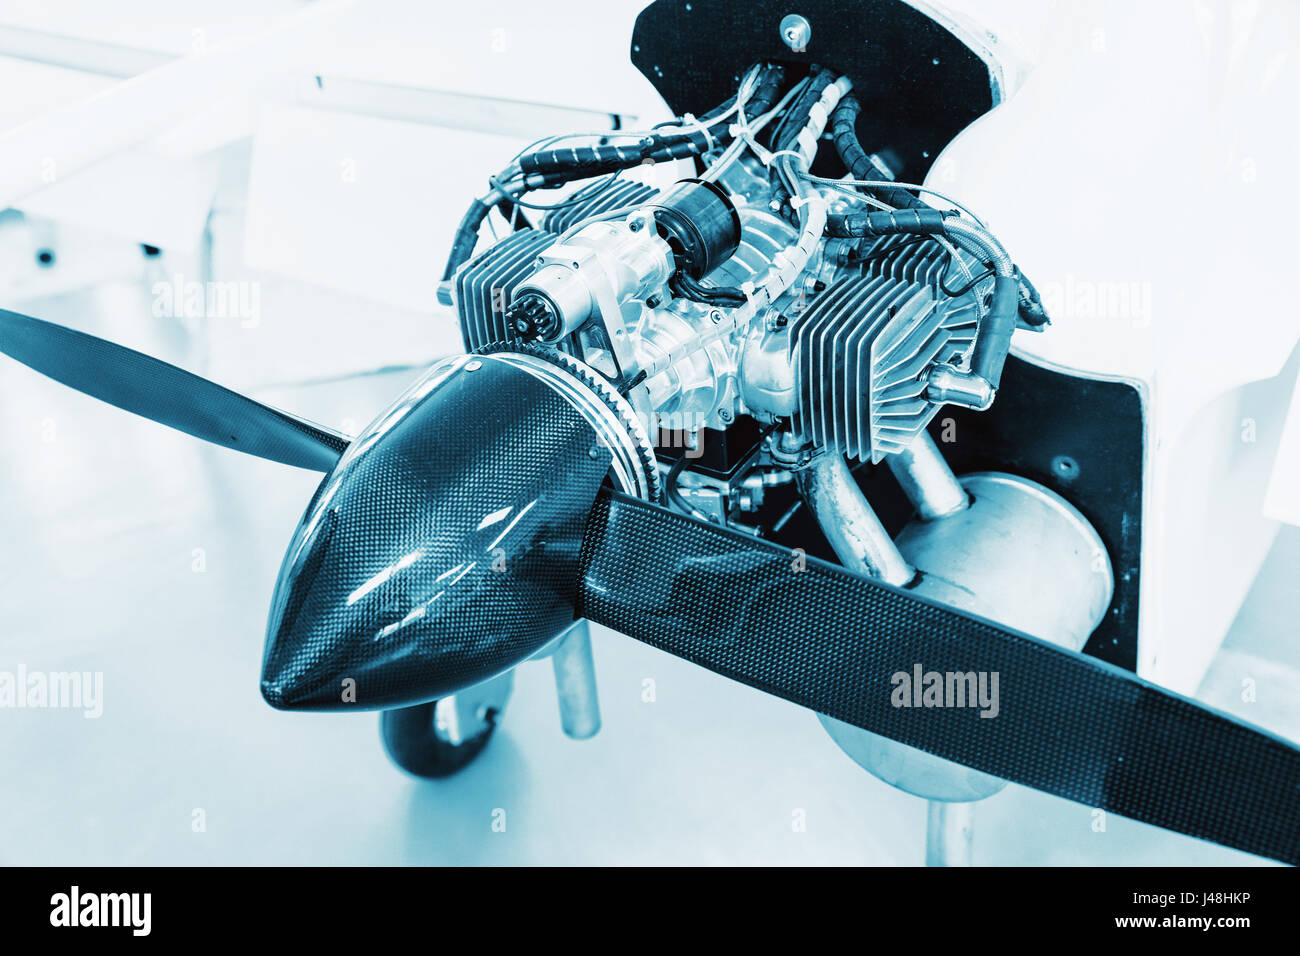 Flugzeugmotor auf kleine Flugzeuge, detaillierte Ansicht von Motor, Propeller und Kegel. Stockfoto